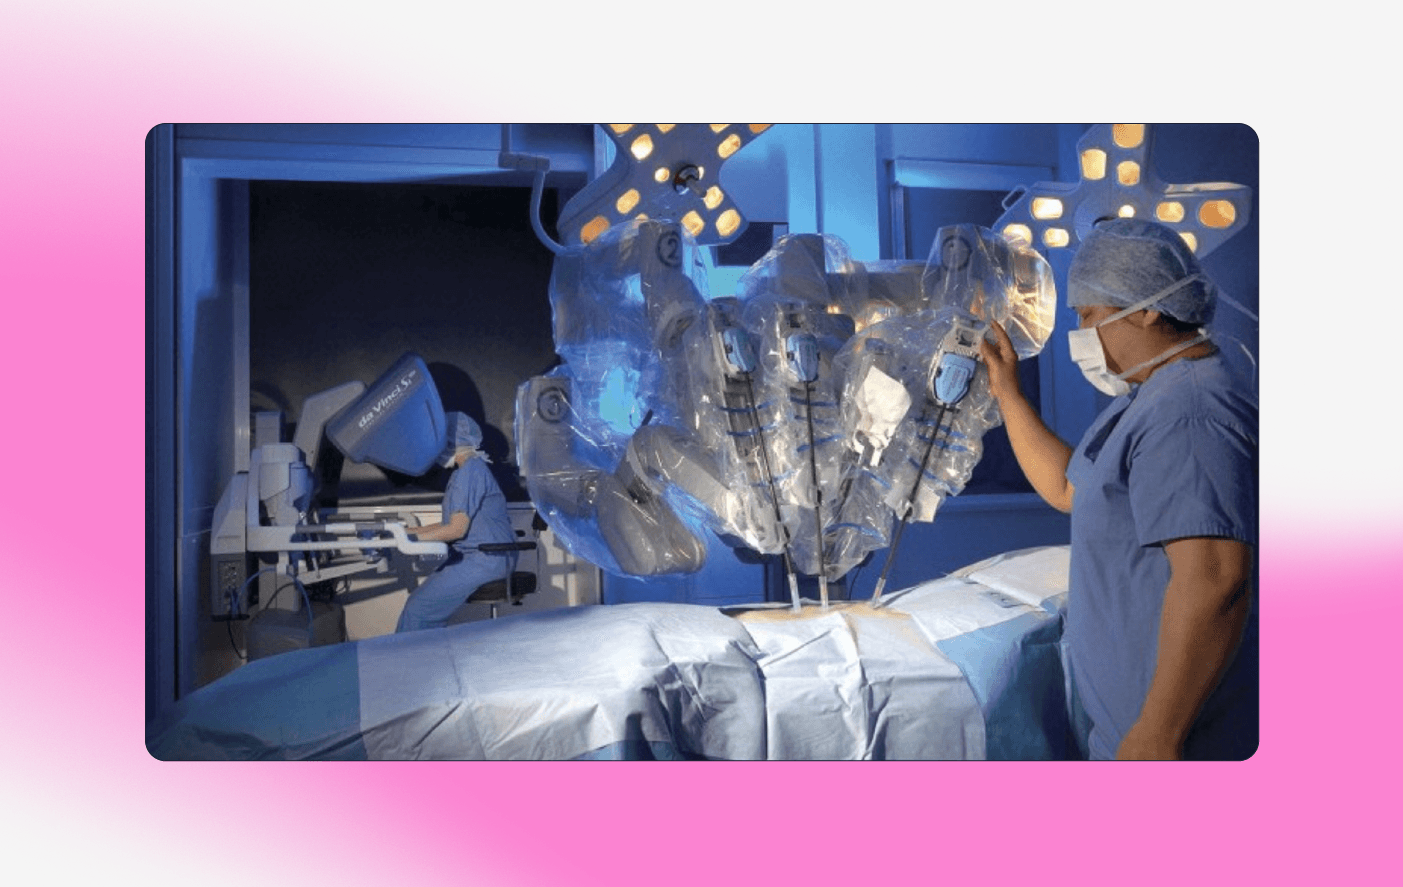 Хирург управляет движениями робота при помощи инструментов на консоли. Источник: https://blog.sciencemuseum.org.uk/robot-surgery-the-da-vinci-robot/